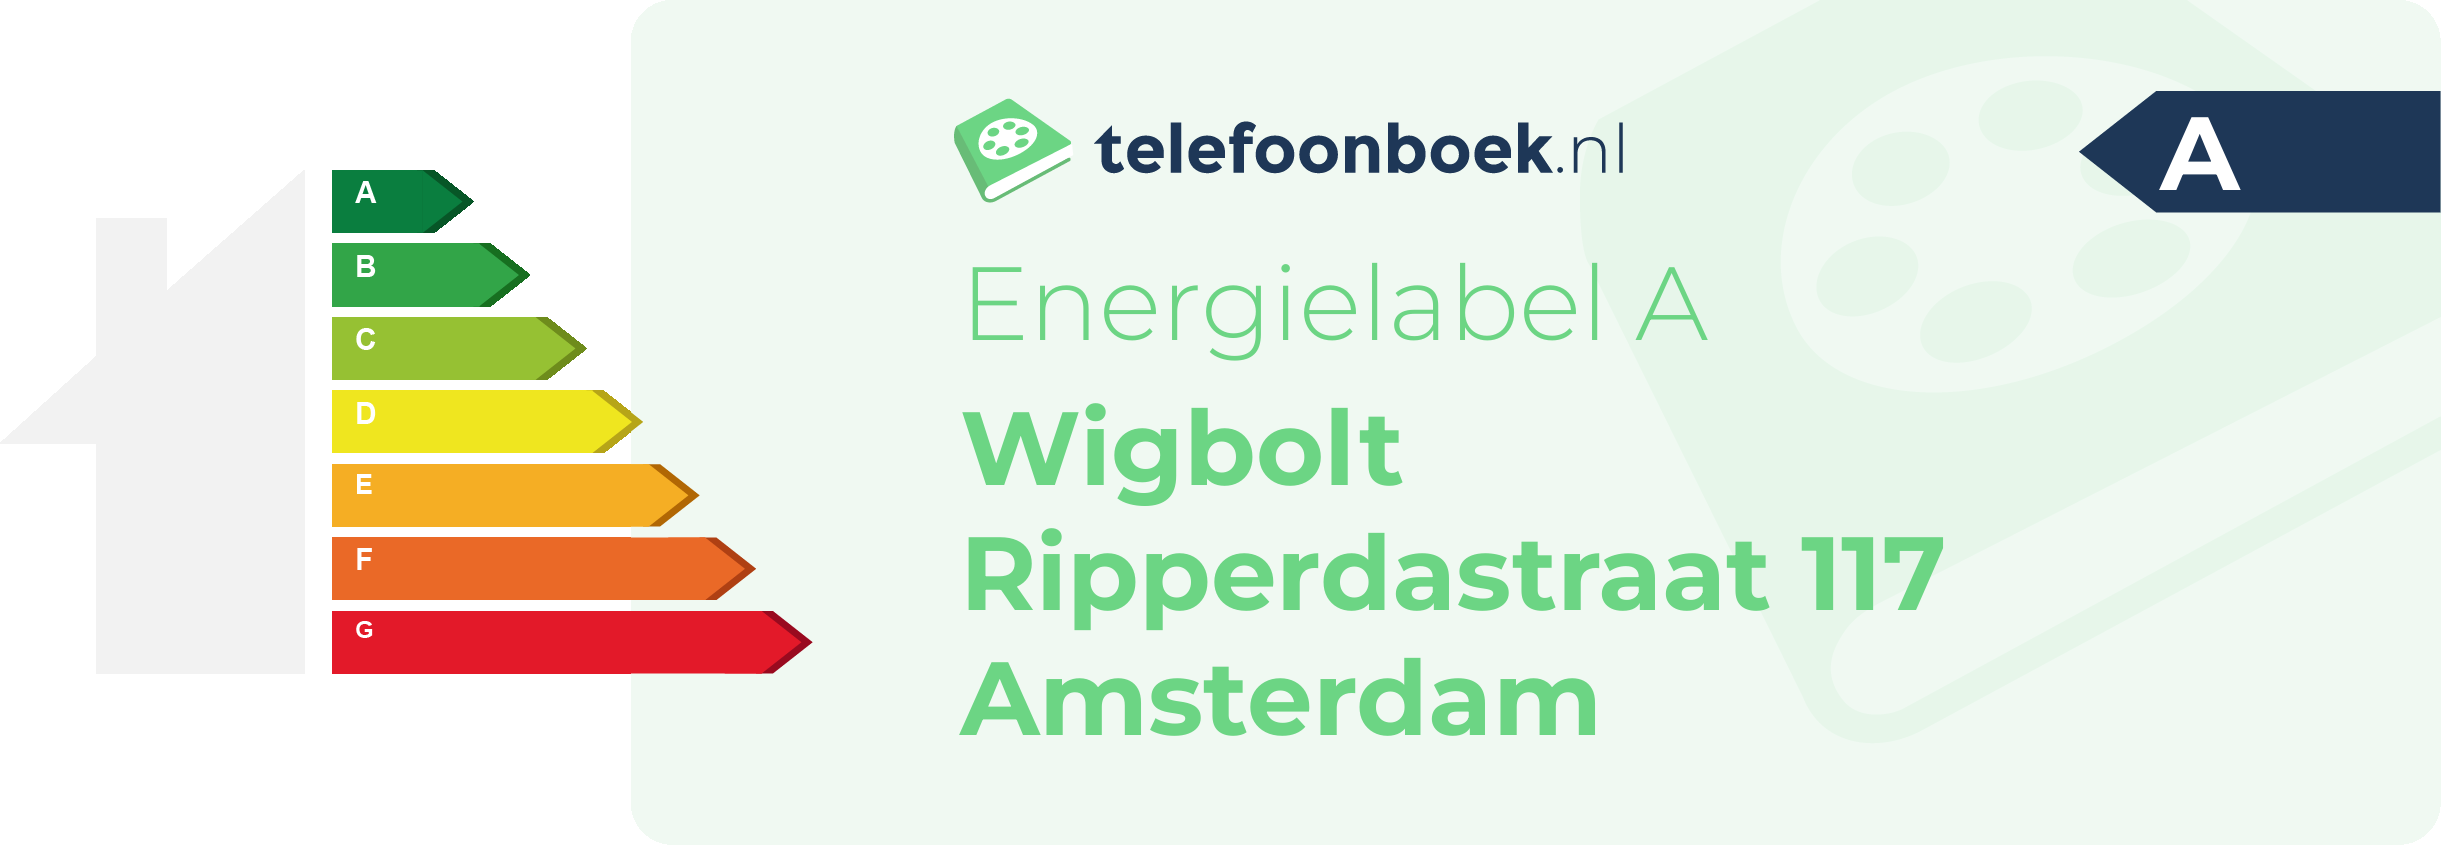 Energielabel Wigbolt Ripperdastraat 117 Amsterdam